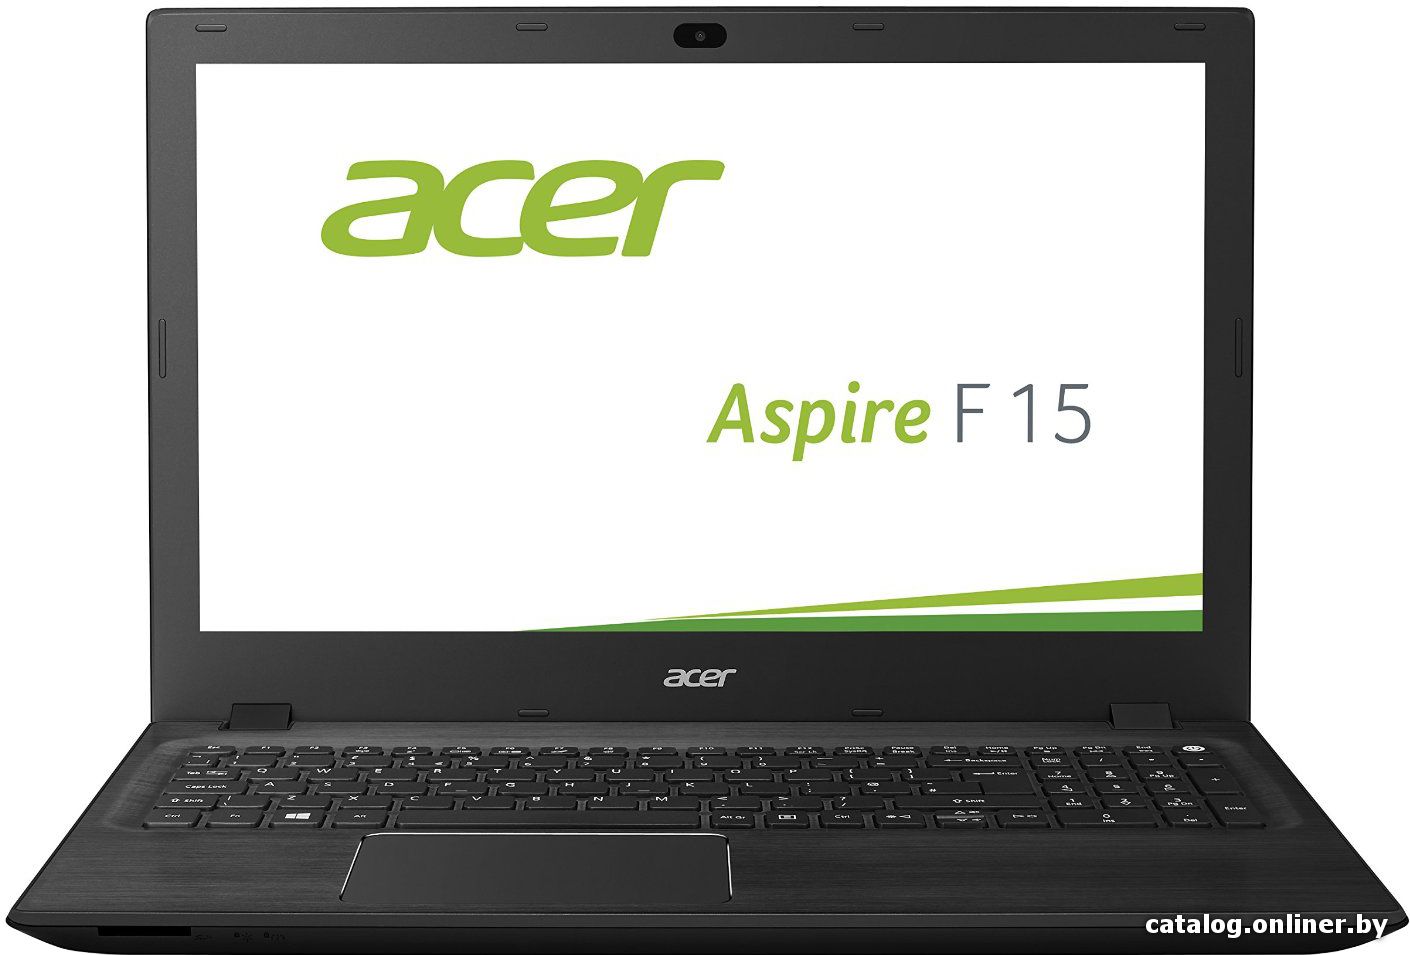 Замена жесткого диска Acer Aspire F15 F5-571G-587M